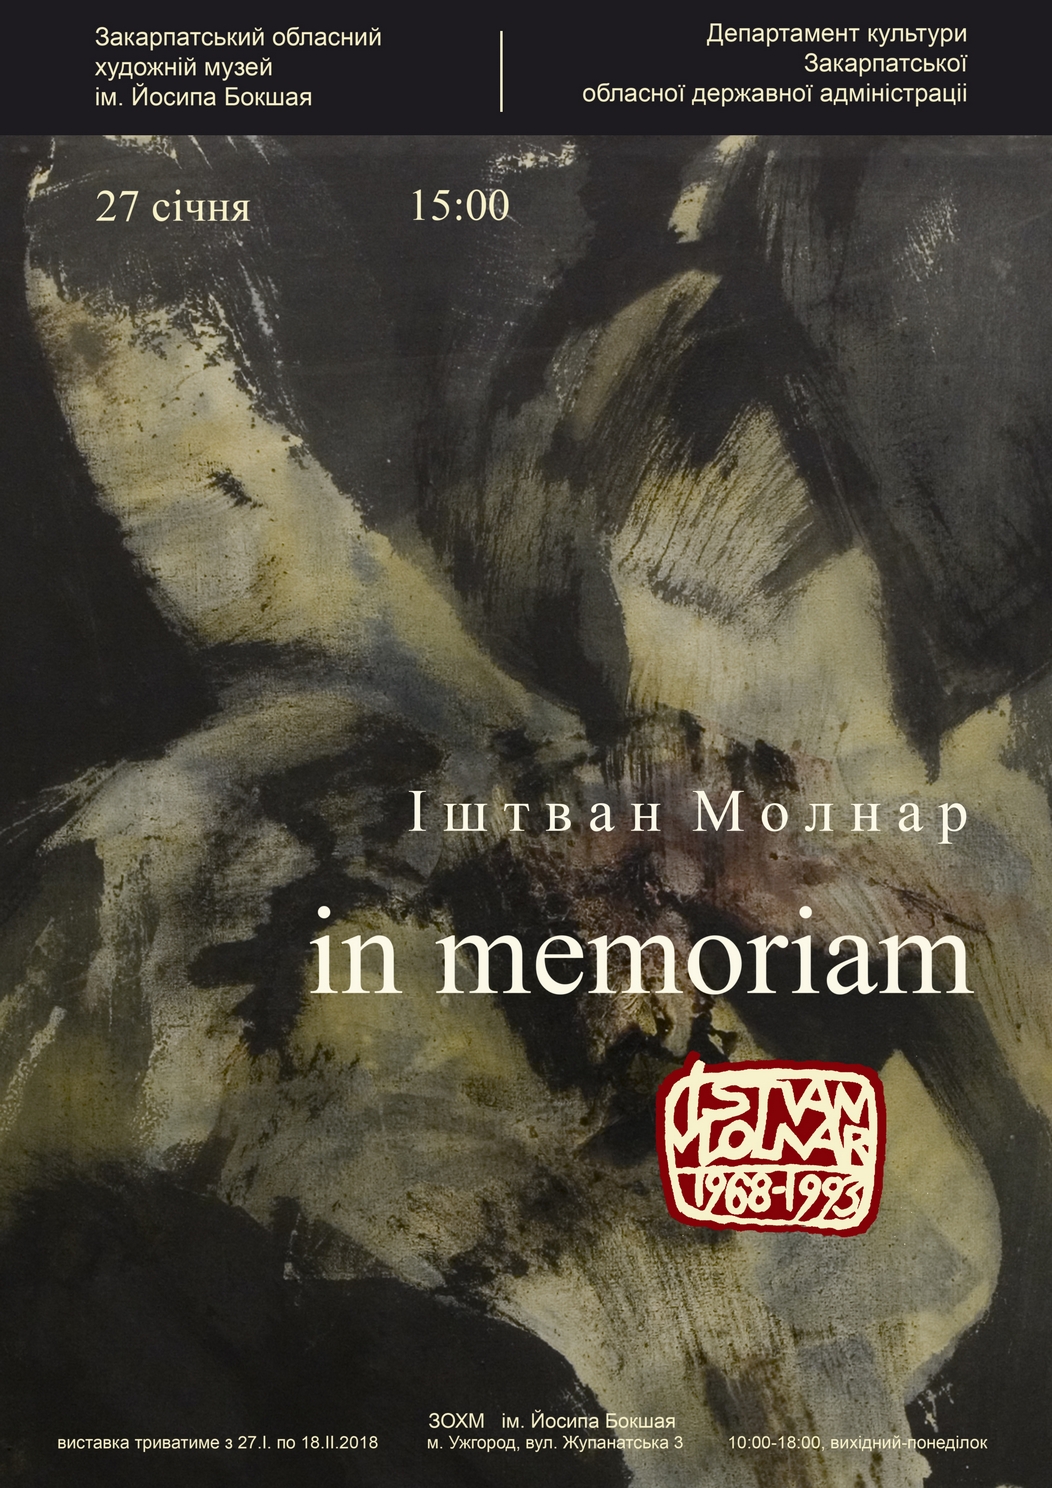 Ретроспективну виставку творів Іштвана Молнара "In memoriam" відкриють в Ужгороді